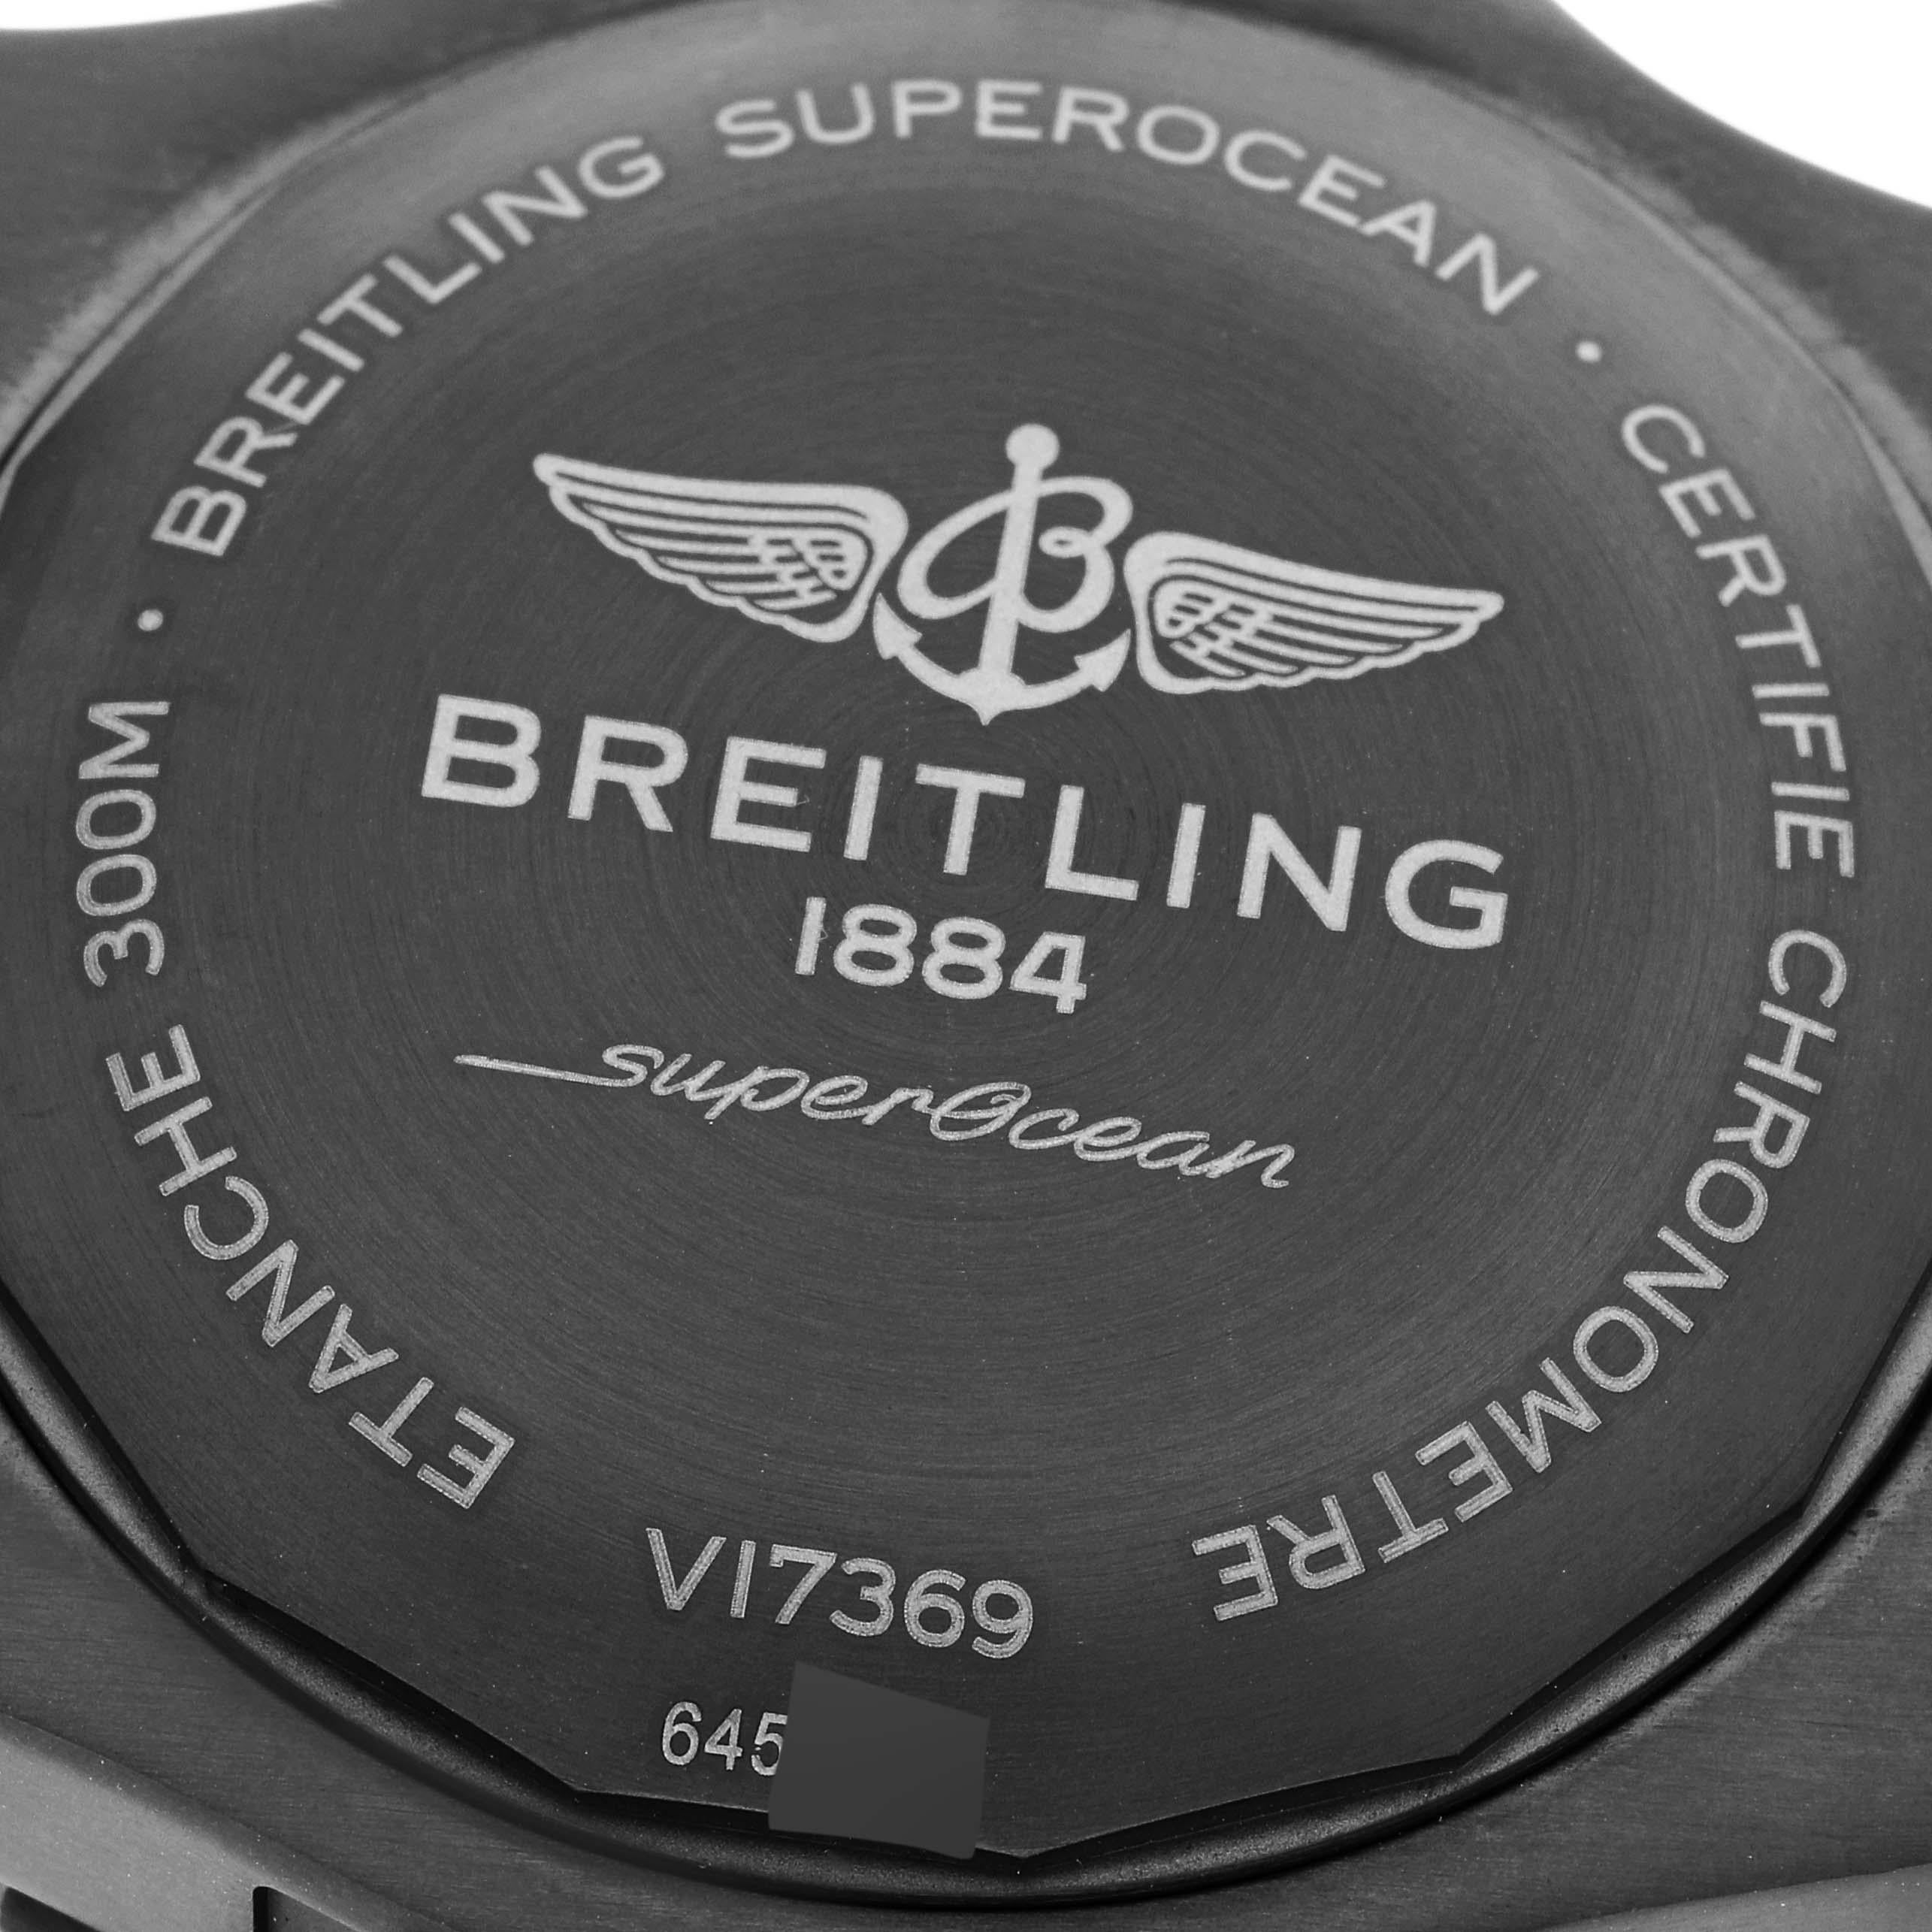 Breitling Superocean 48 Blue Dial Titanium Mens Watch V17369 Box Card 2